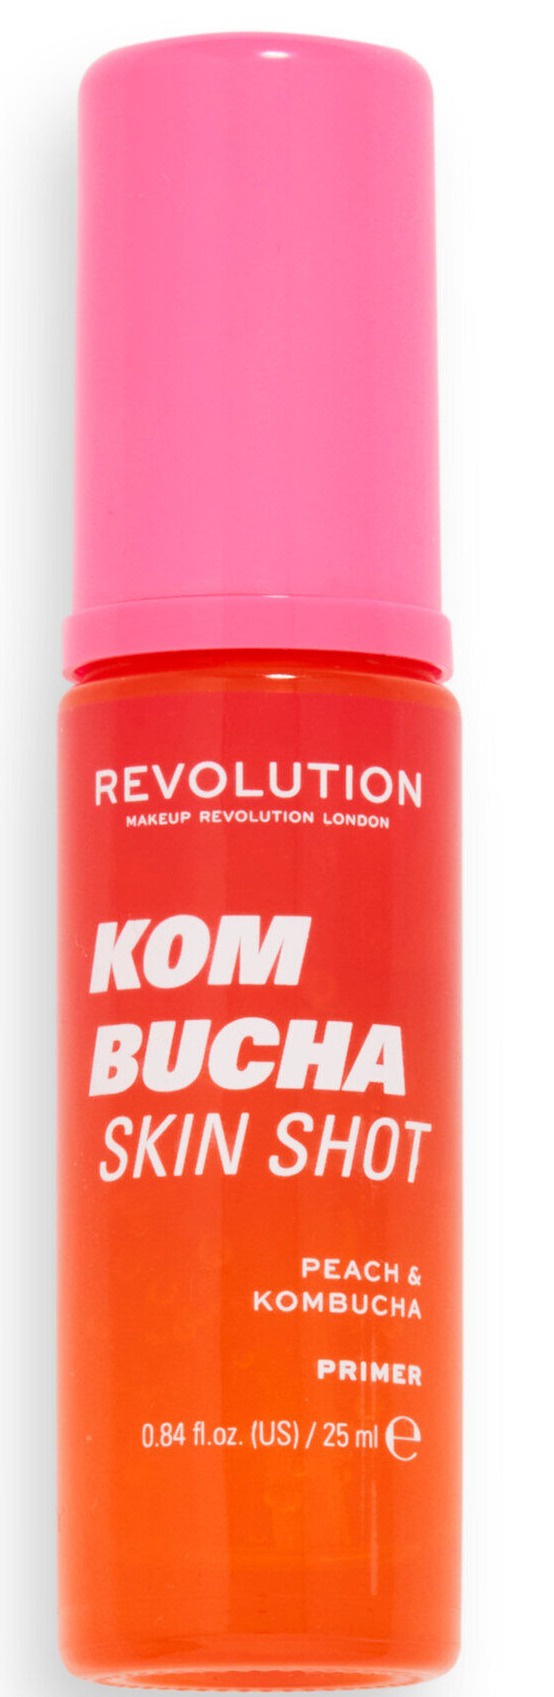 Revolution Kombucha Skin Shot Primer